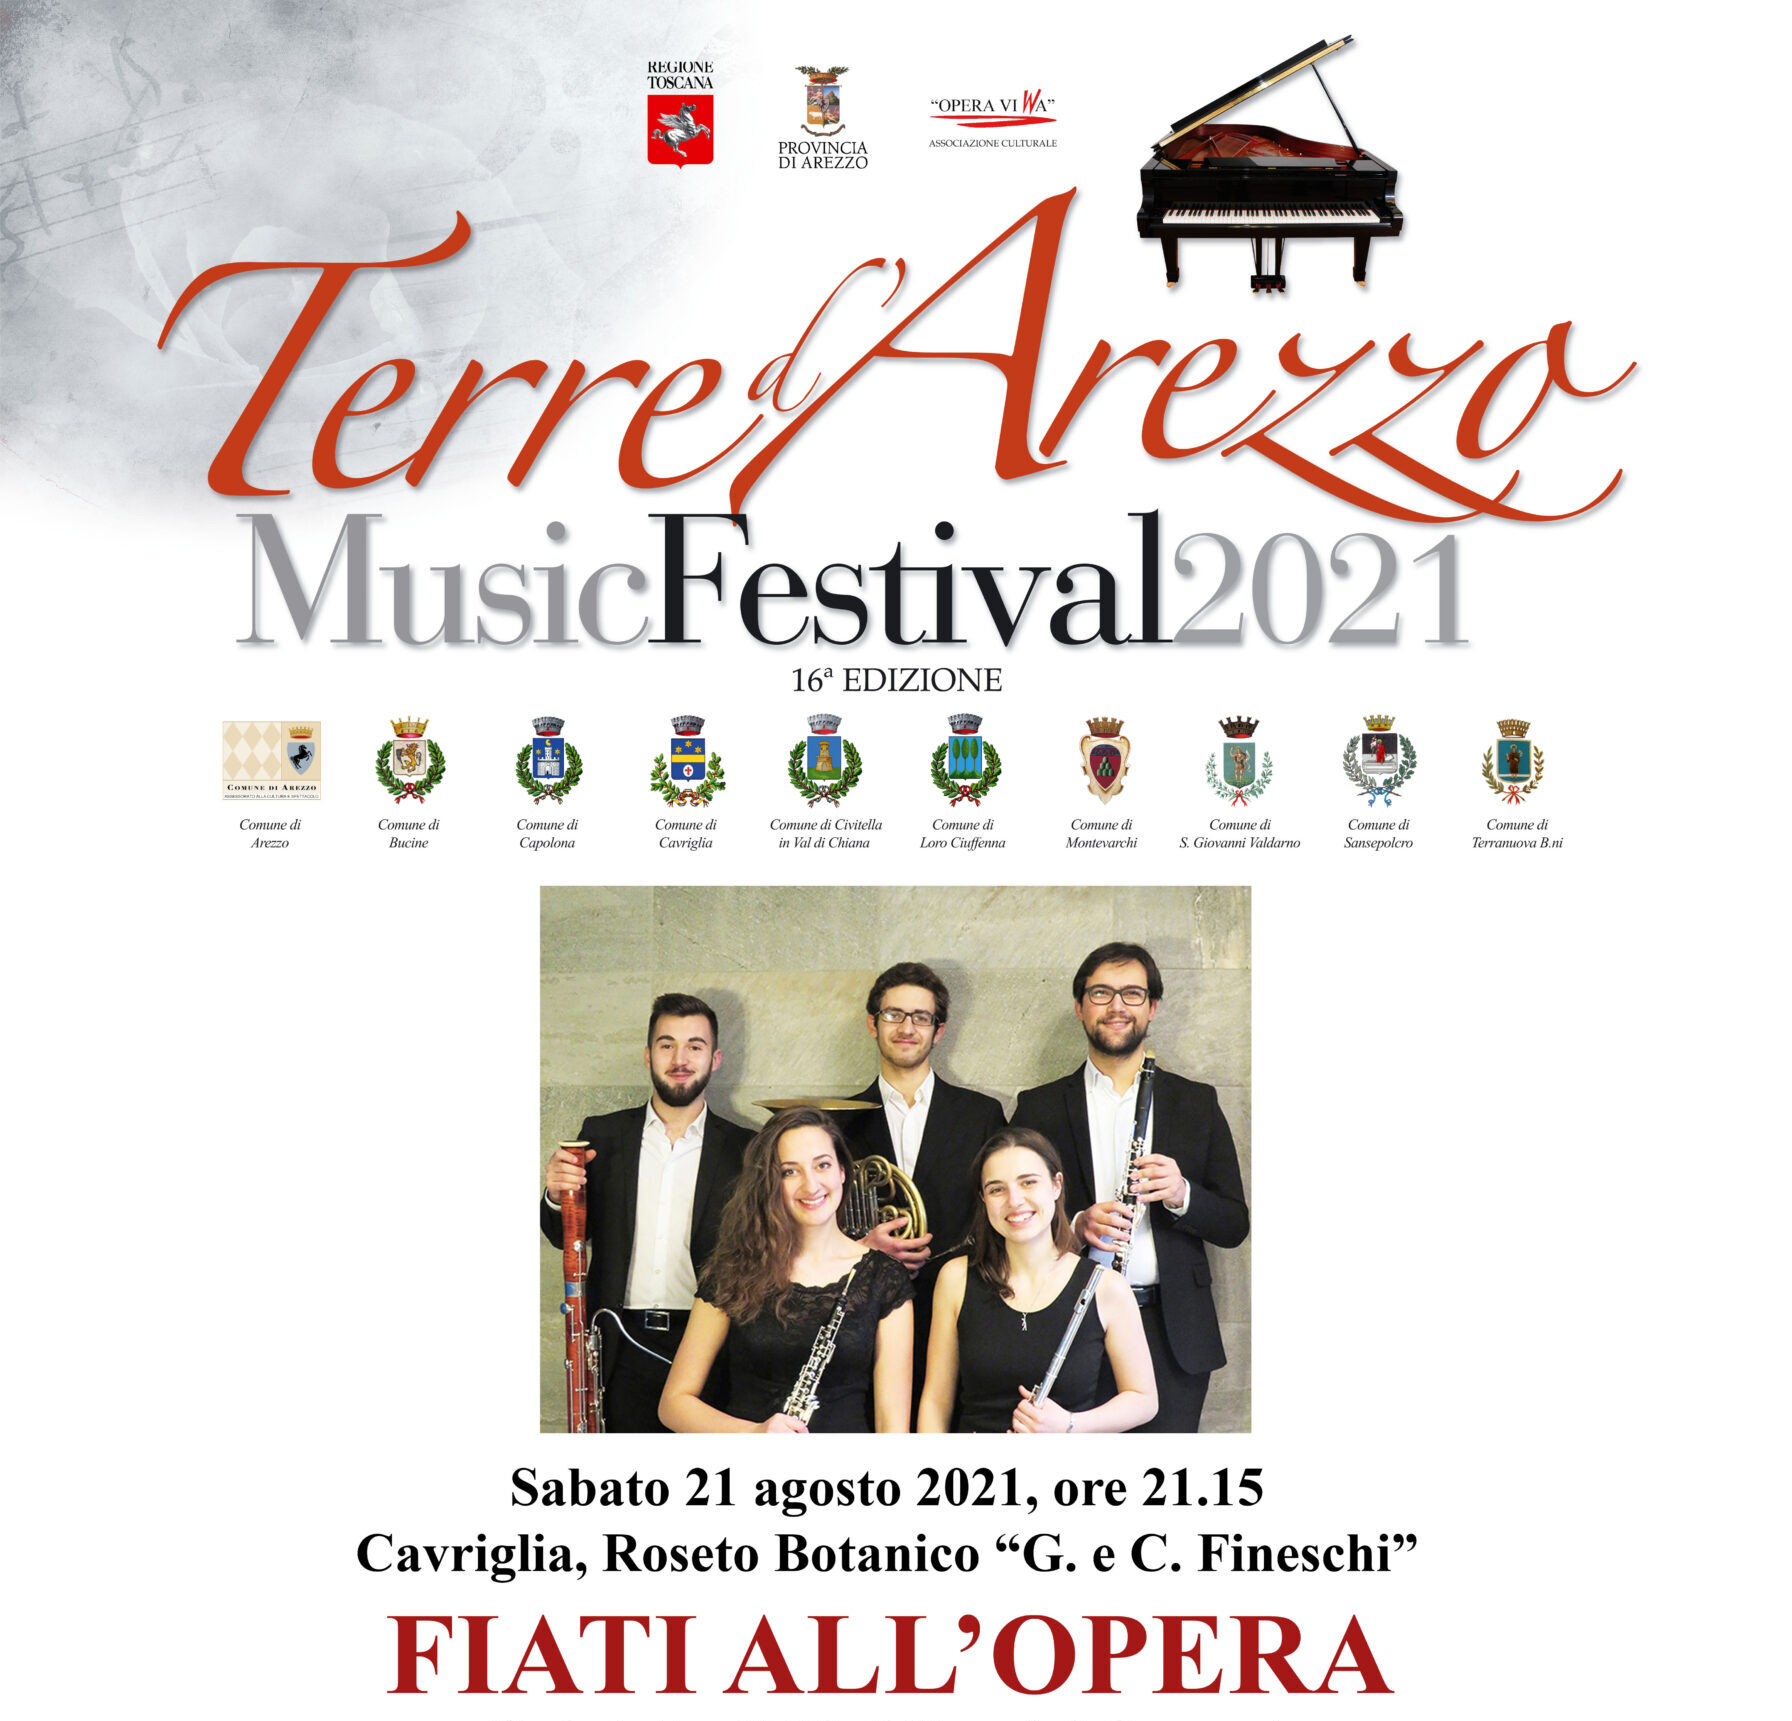 Sabato a Cavriglia il “Terre d’Arezzo Music Festival”